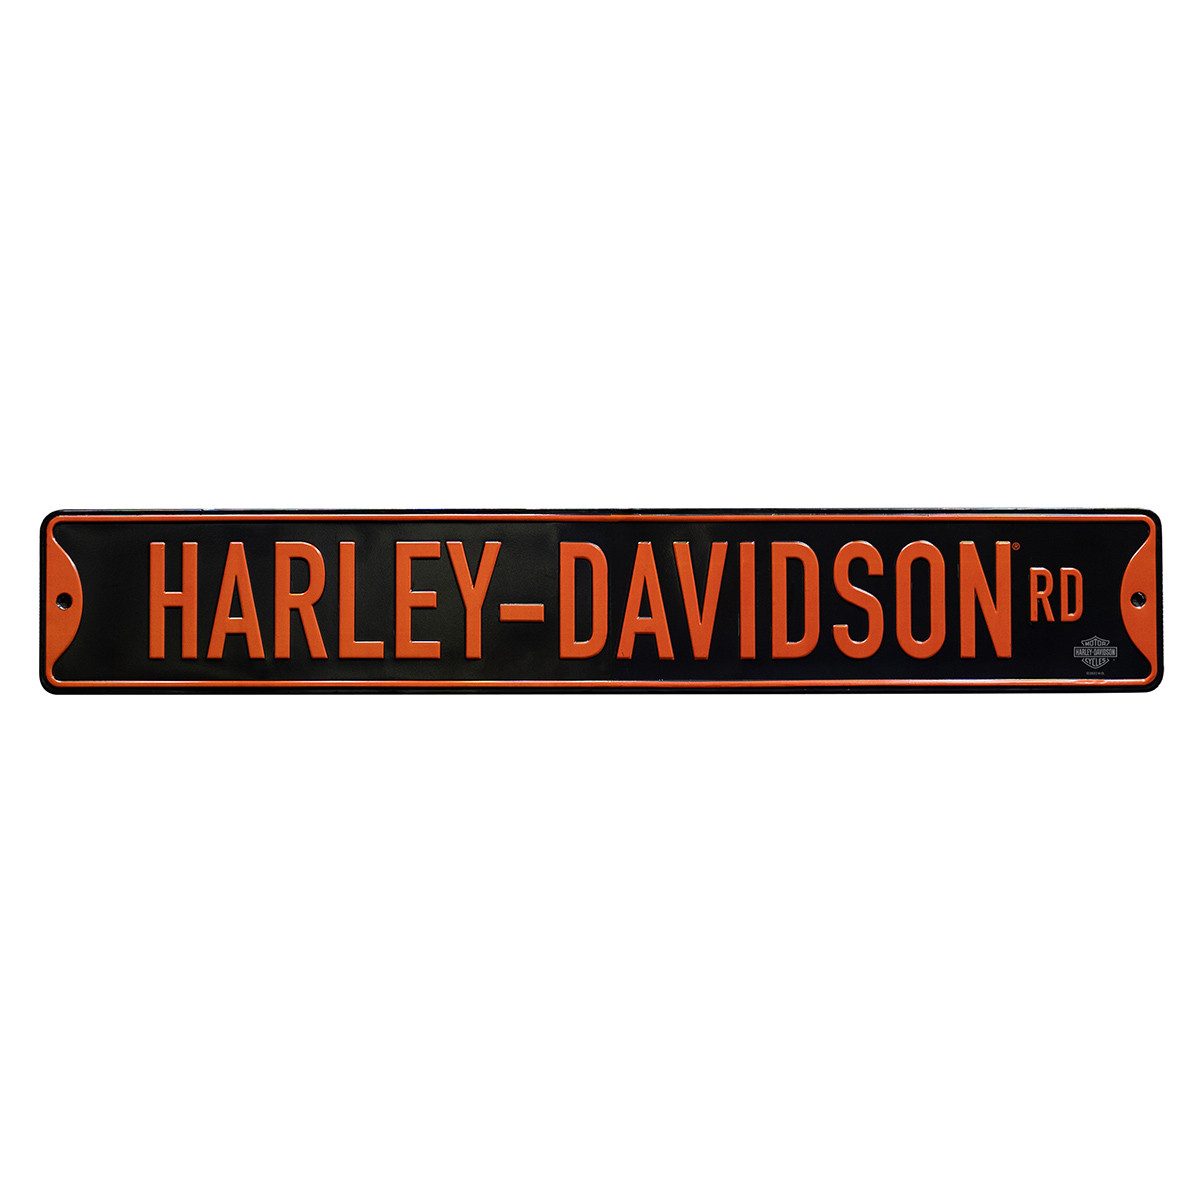 HARLEY-DAVIDSON ROAD METAL STRET SIGN